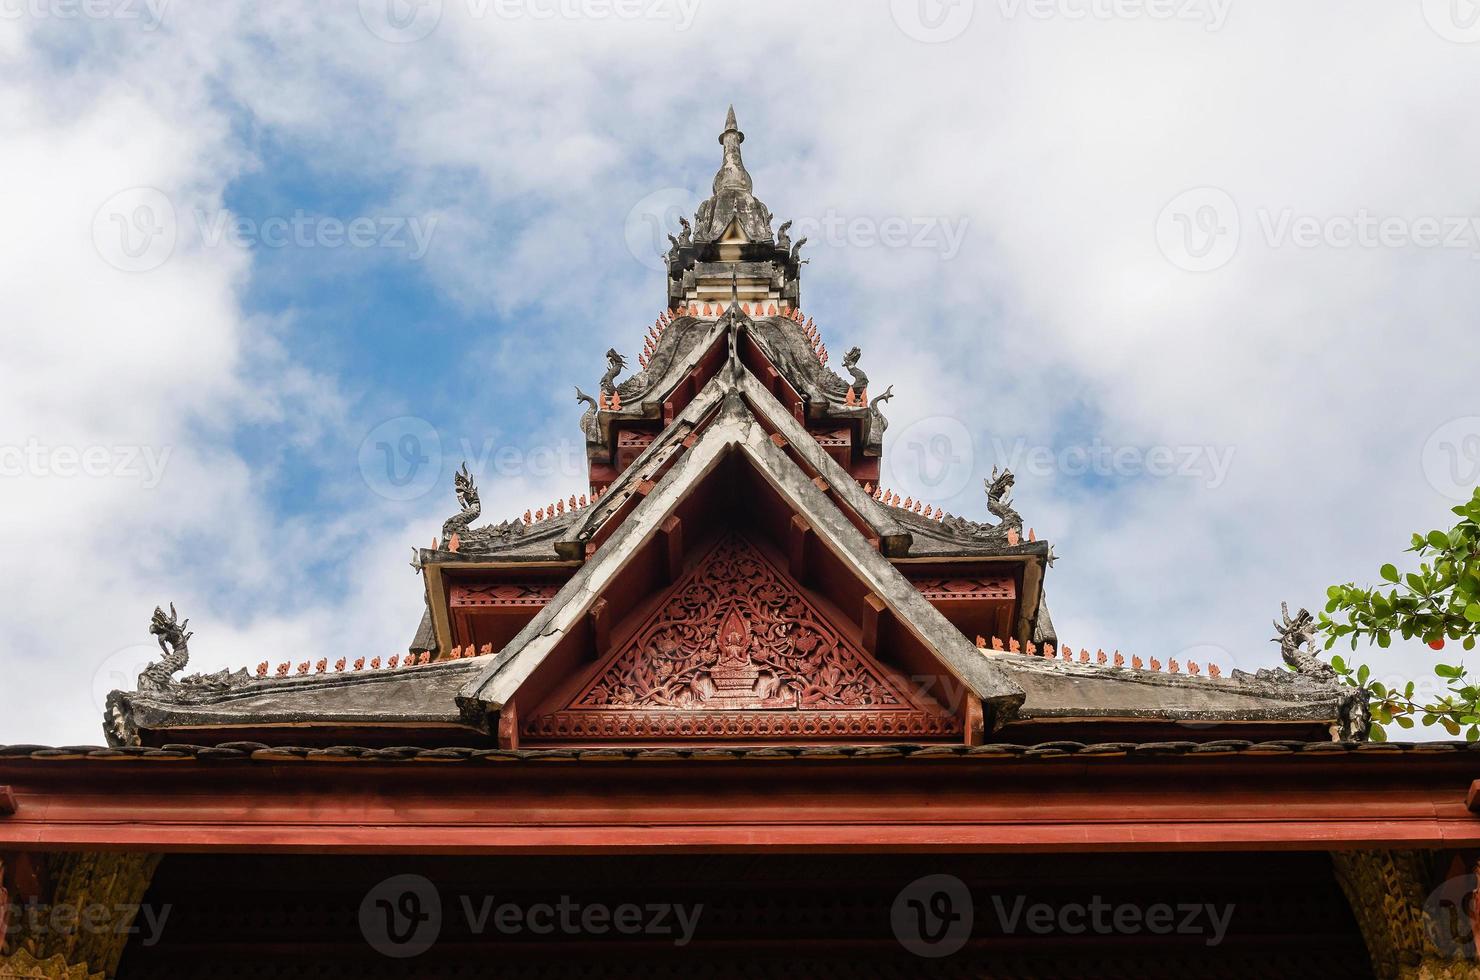 antigo pavilhão do mosteiro wat sisaket na cidade de vientiane do laos foto